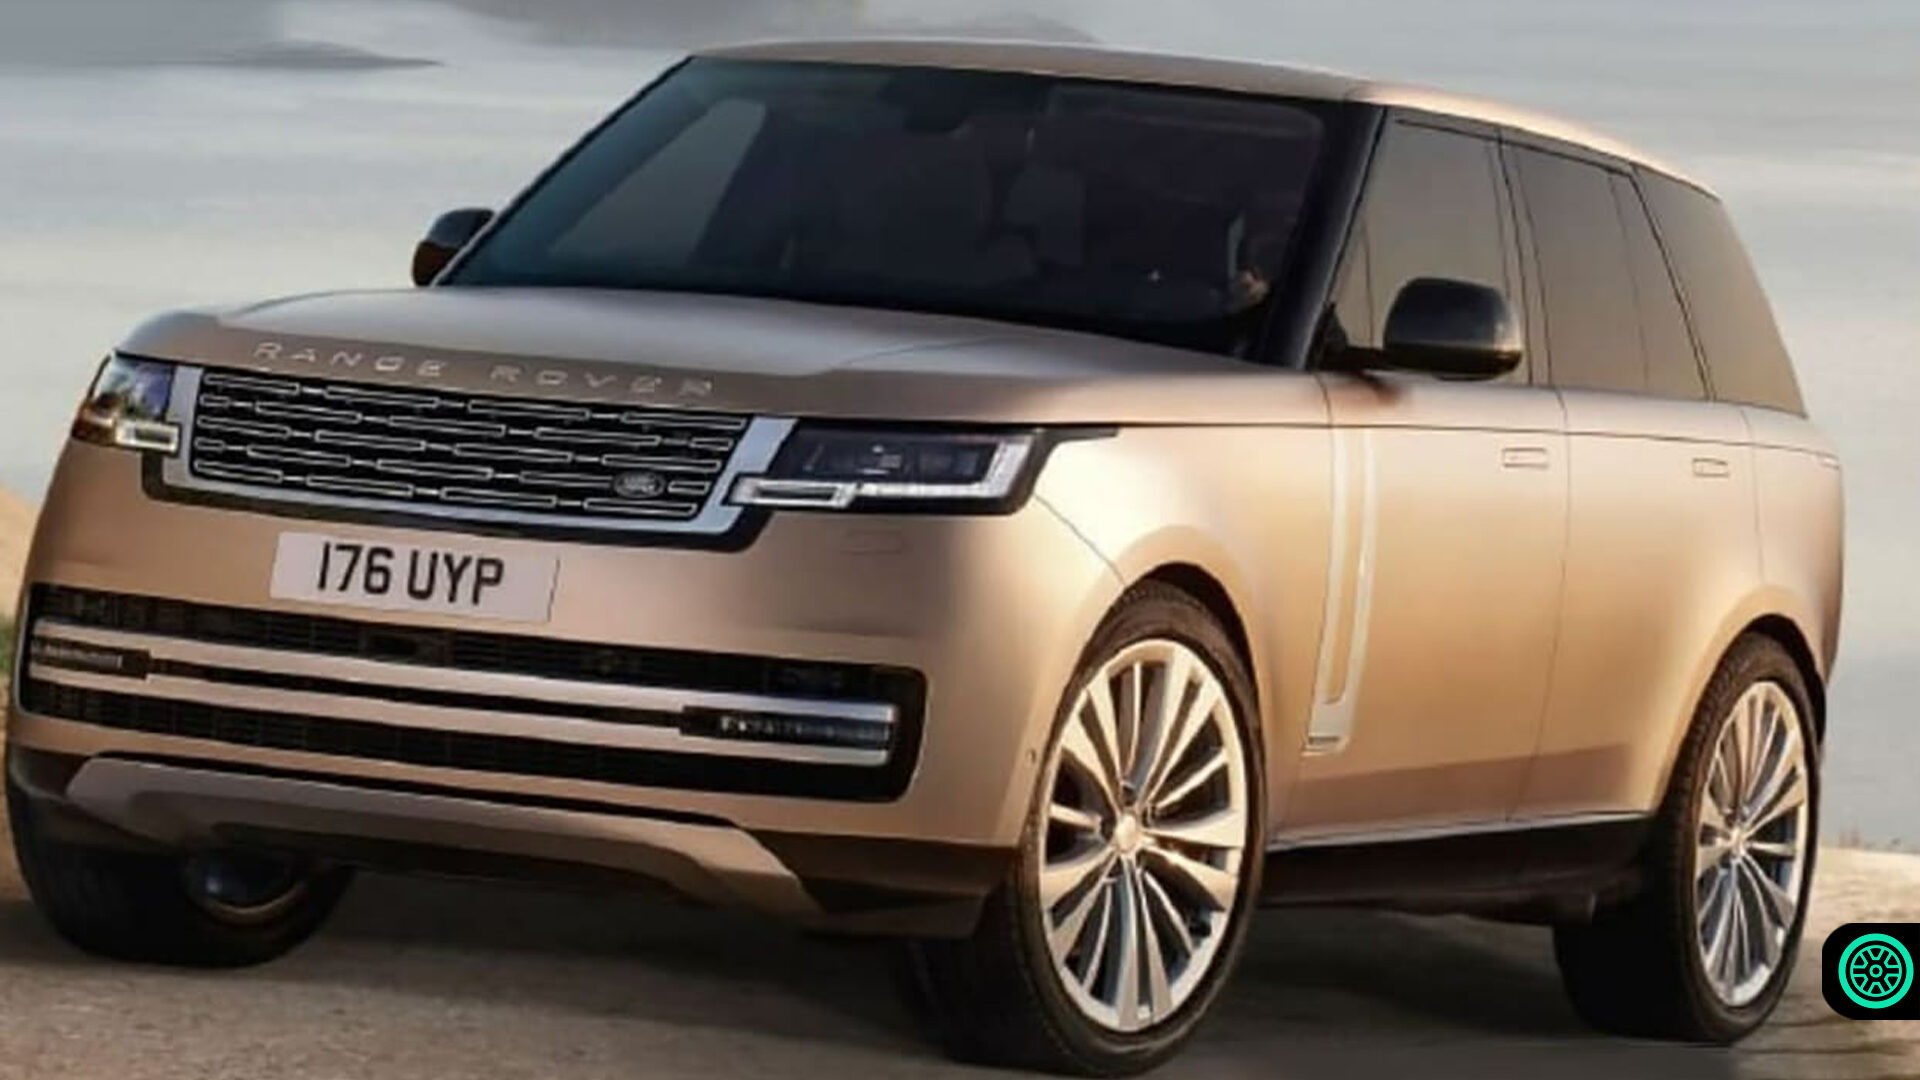 2022 Range Rover modeline yönelik olan görseller bizlerle 14